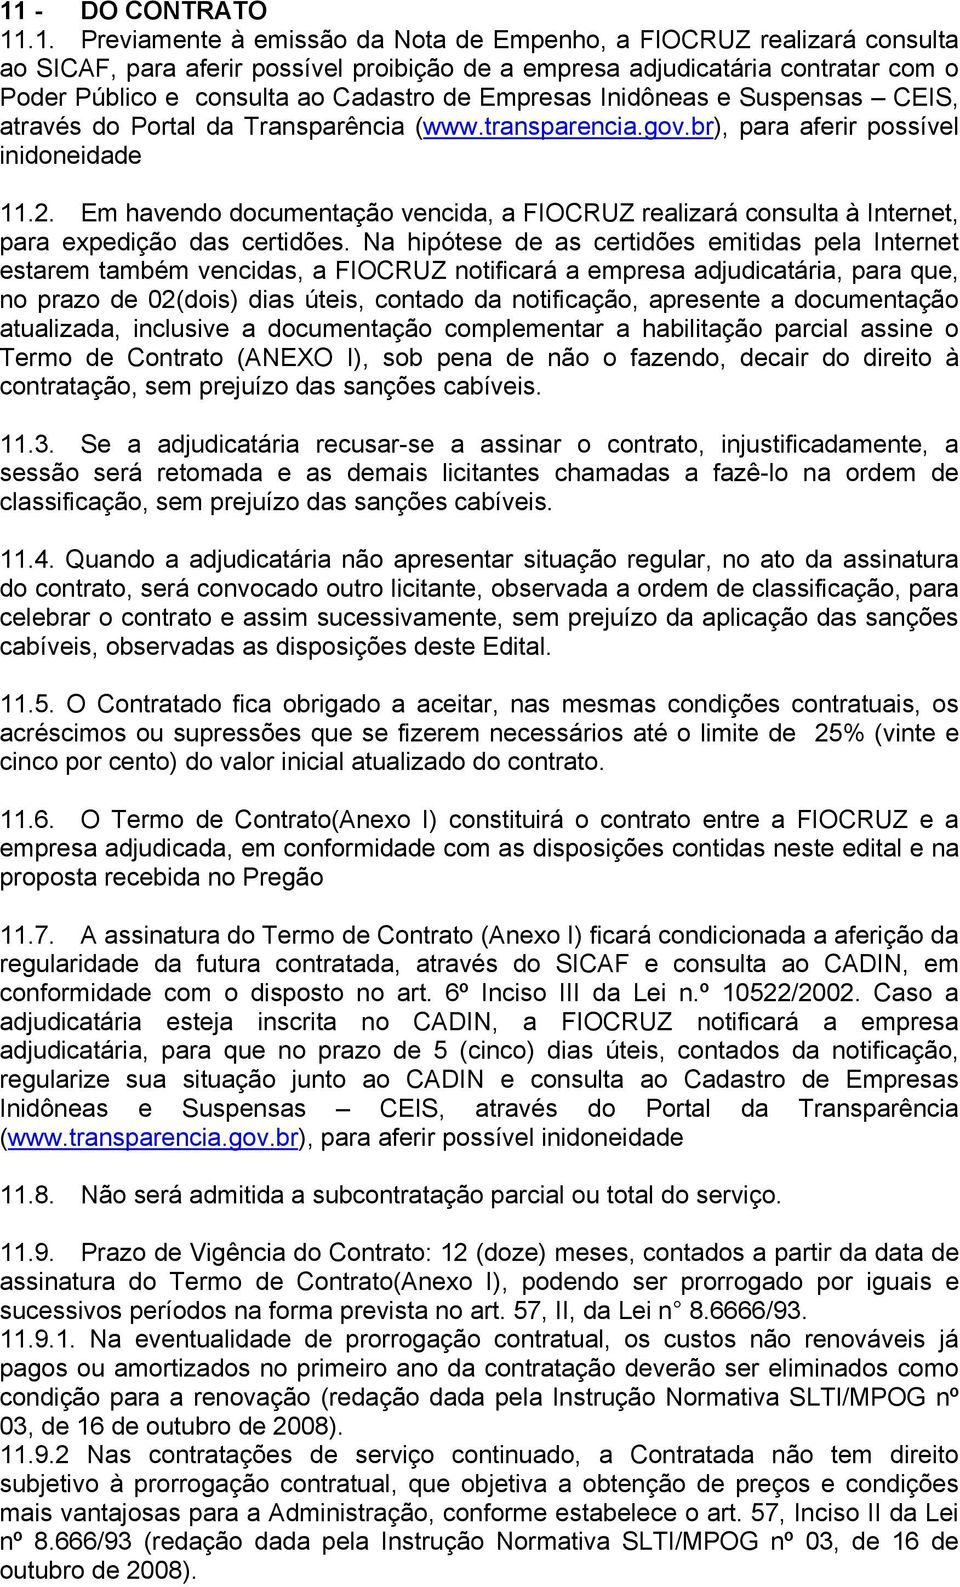 Em havendo documentação vencida, a FIOCRUZ realizará consulta à Internet, para expedição das certidões.